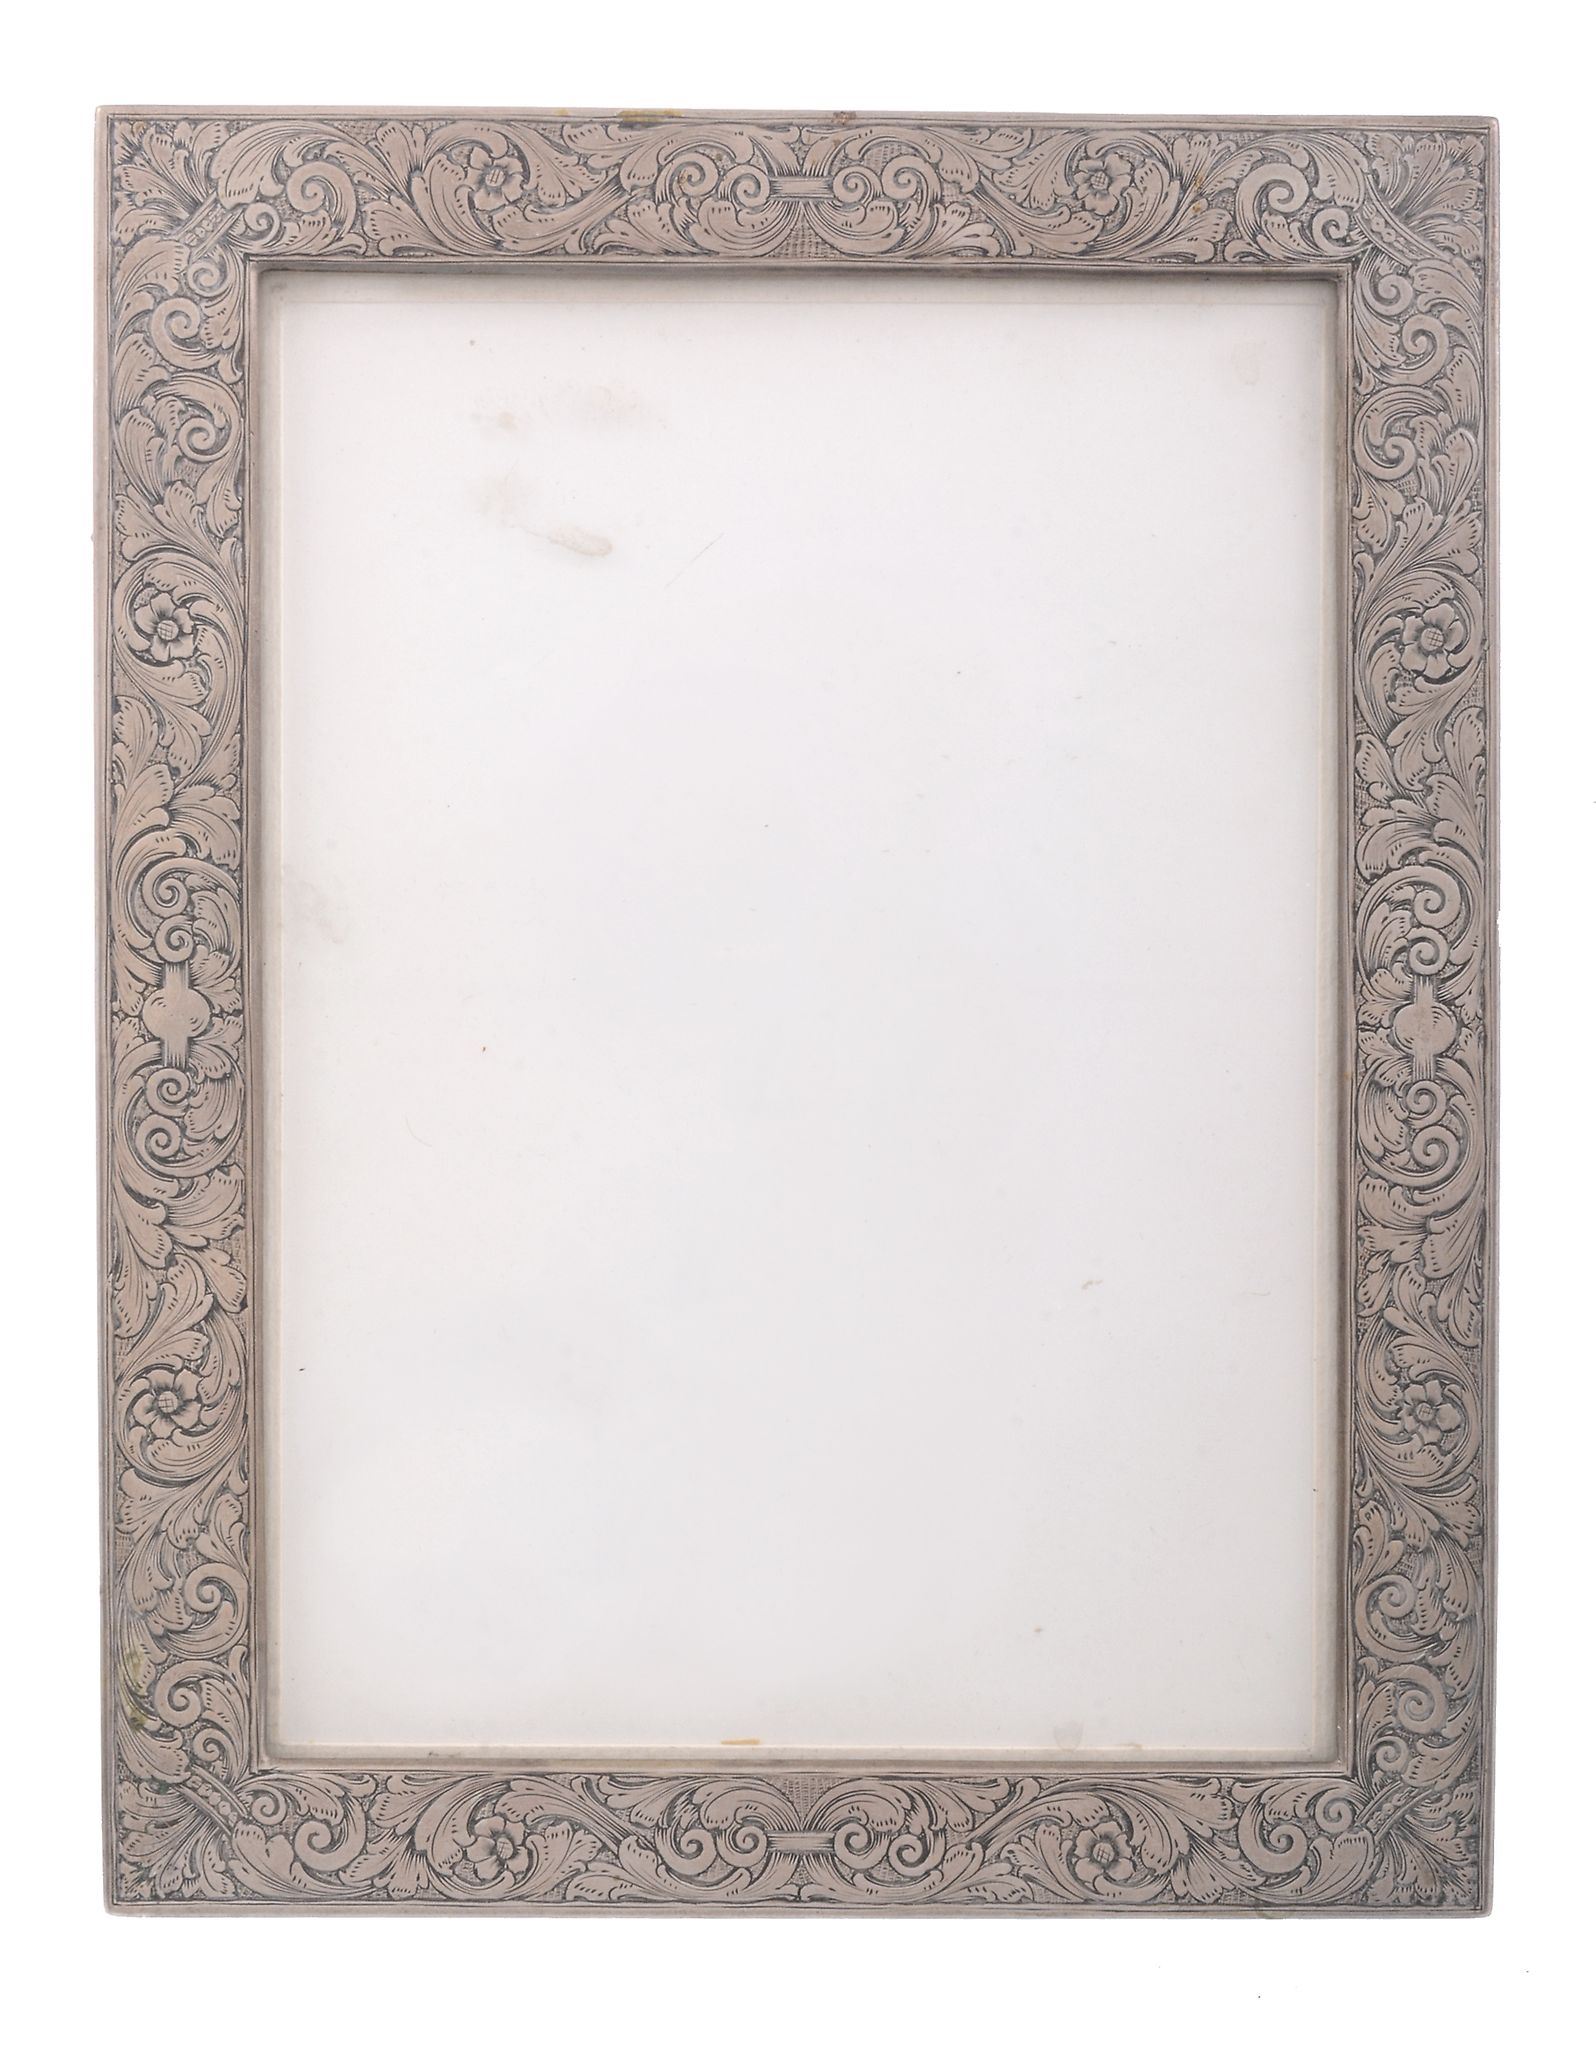 An Italian silver mounted photograph frame, pre 1934   An Italian silver mounted photograph frame,